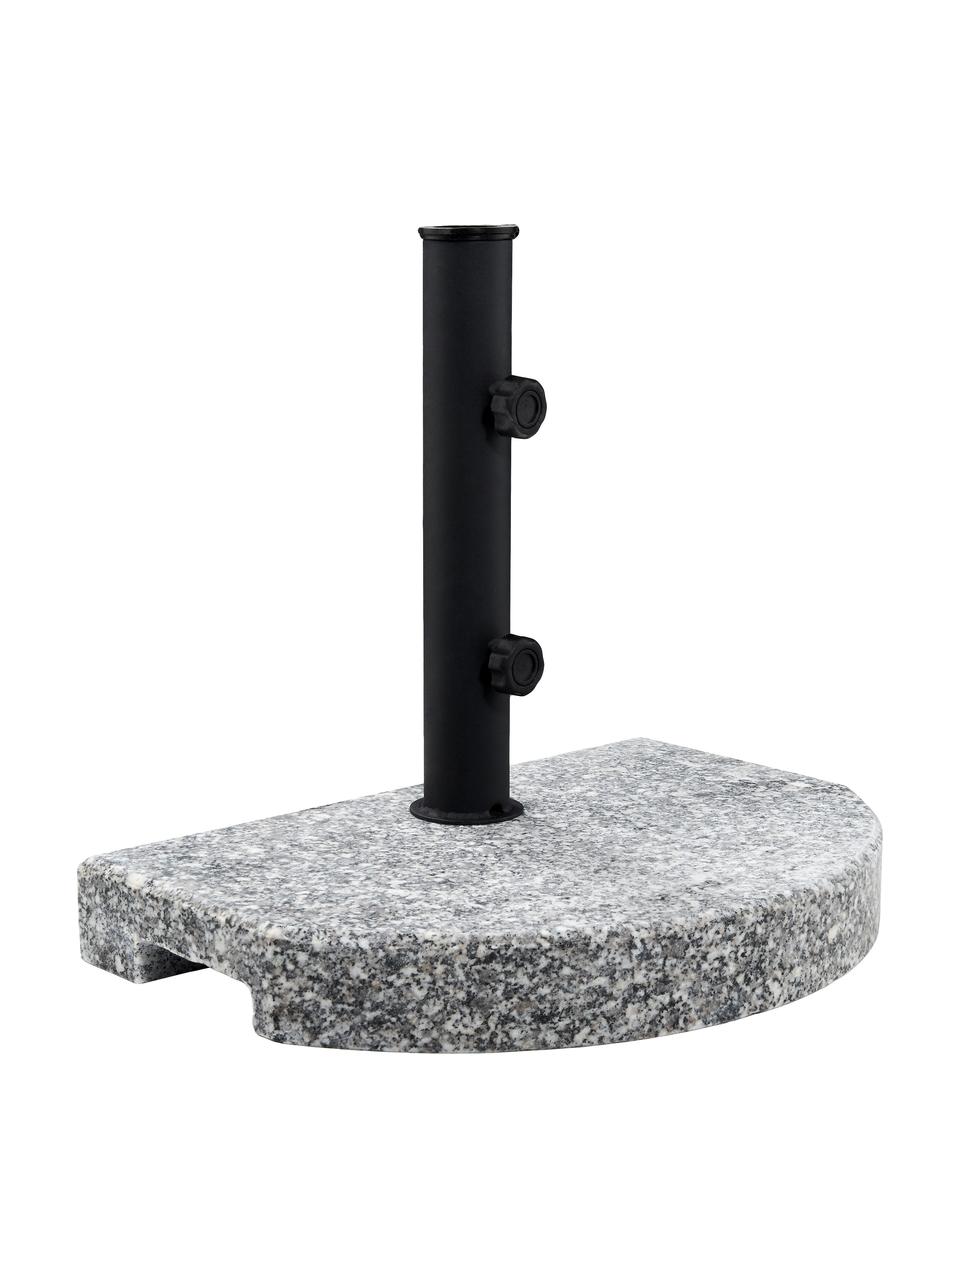 Sonnenschirmständer The Rock, Granit, Stahl, beschichtet, Grau, Schwarz, 40 x 33 cm